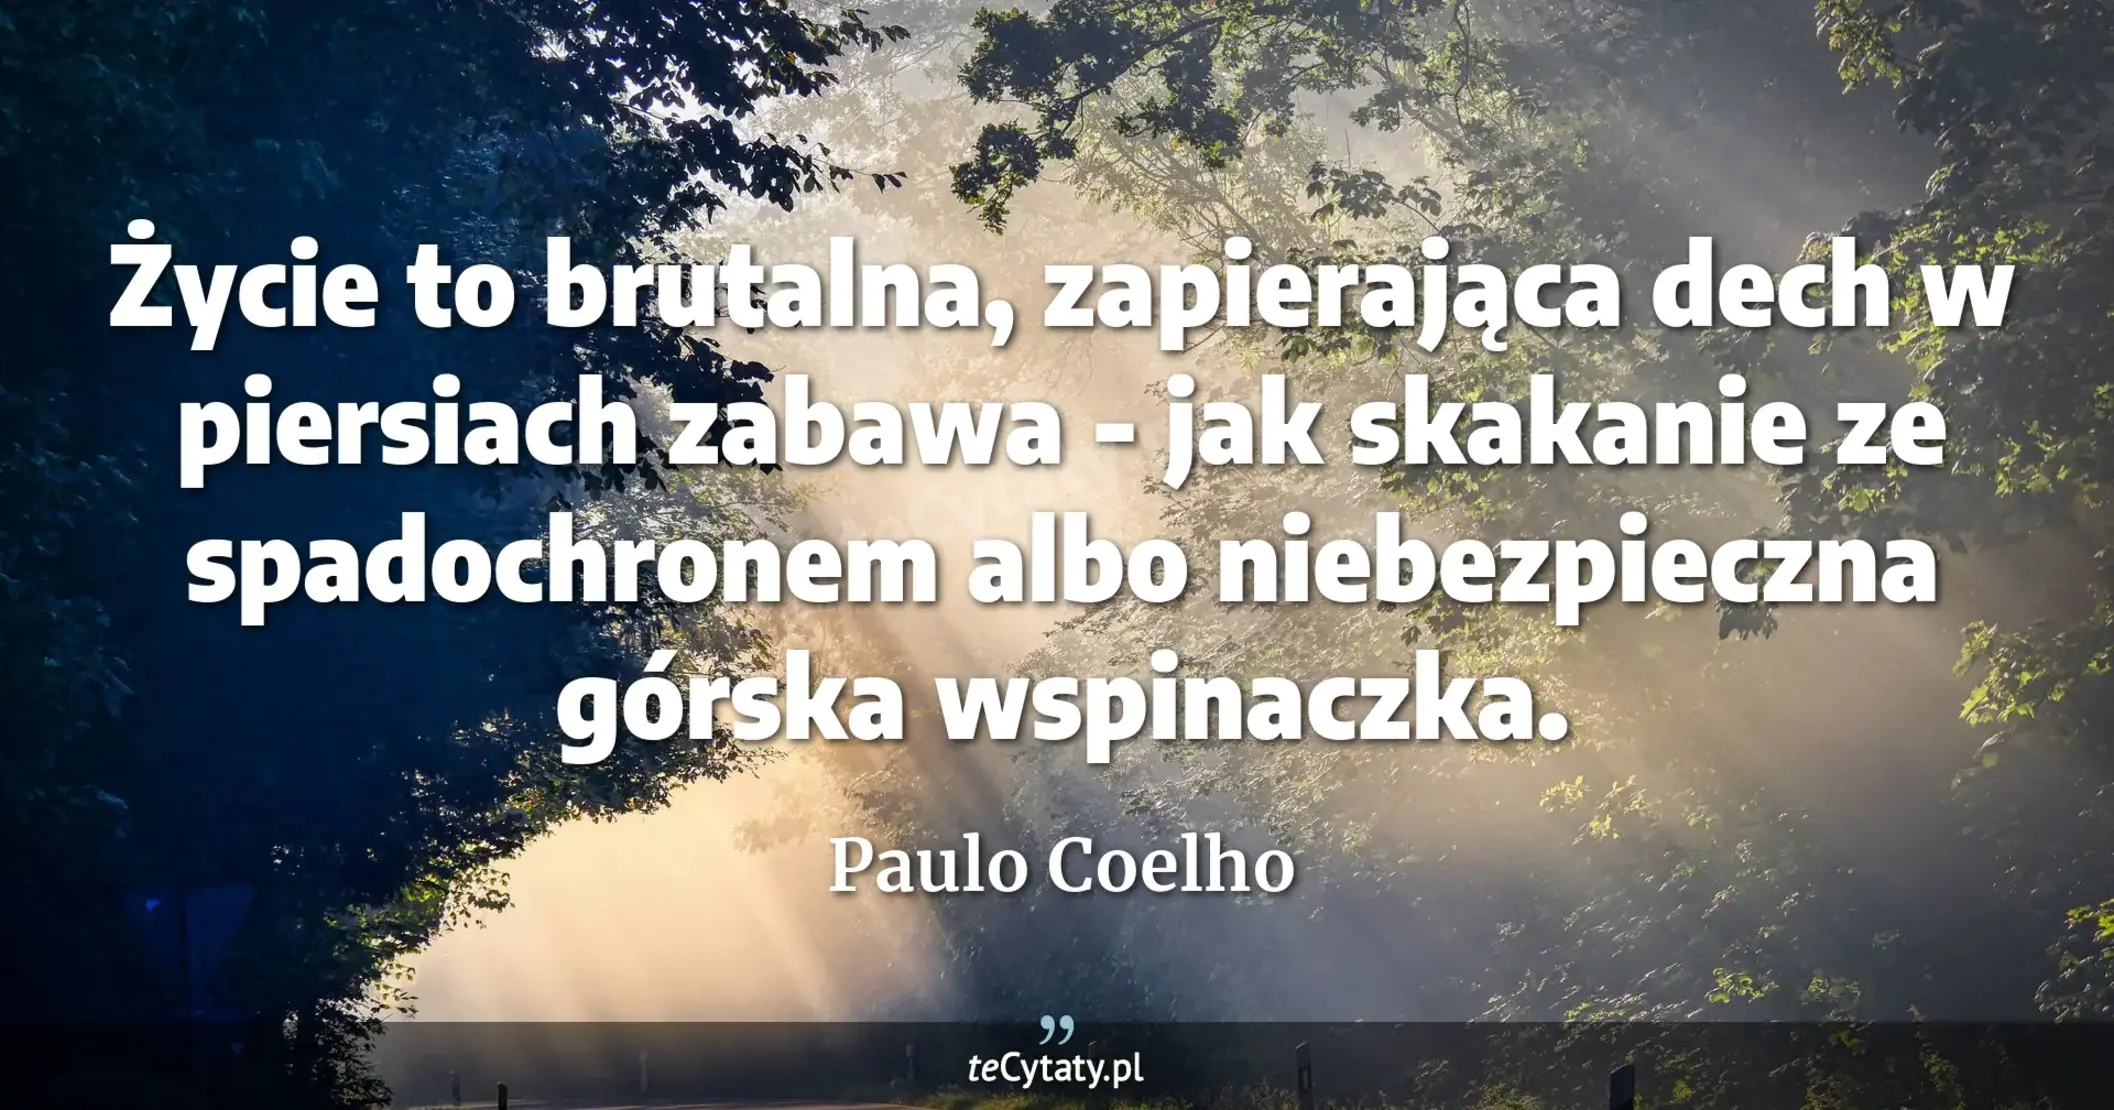 Życie to brutalna, zapierająca dech w piersiach zabawa - jak skakanie ze spadochronem albo niebezpieczna górska wspinaczka. - Paulo Coelho